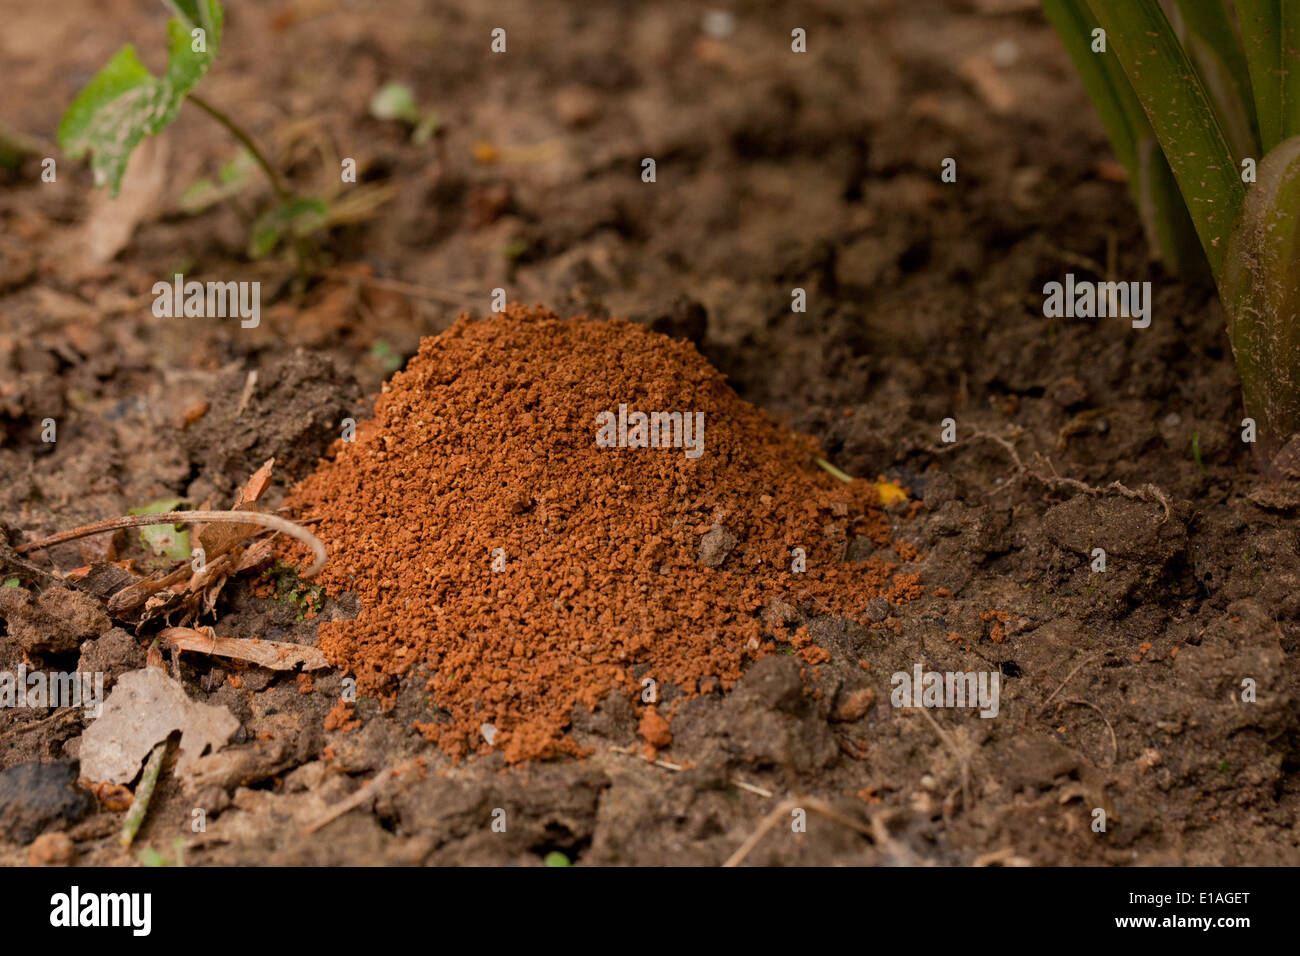 Ant mound on clay soil - USA Stock Photo